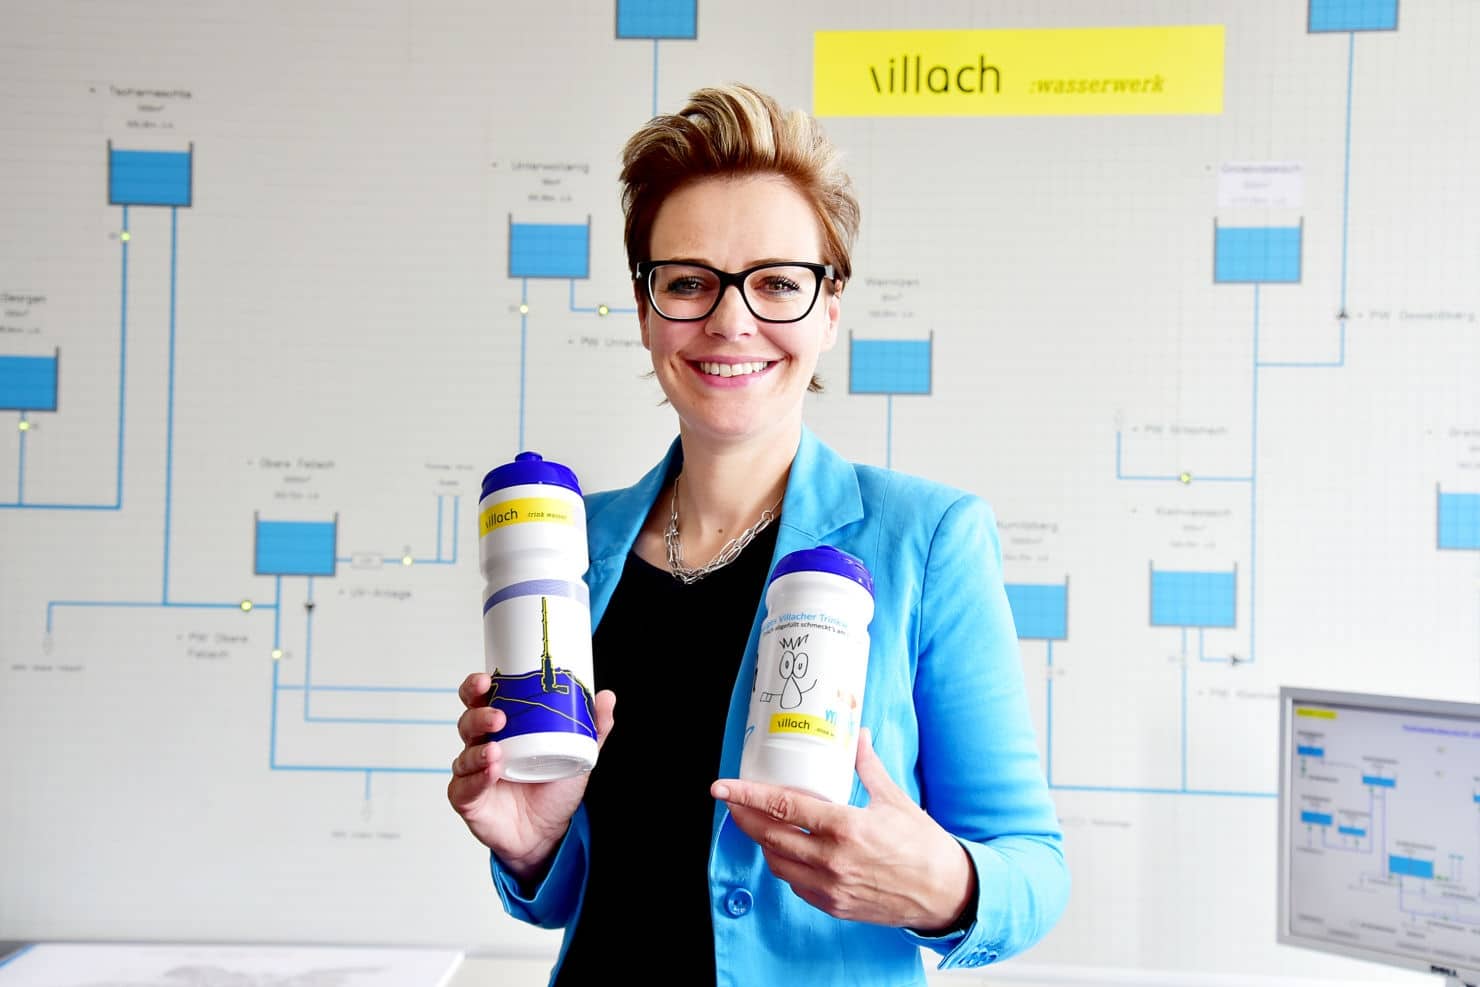 Stadträtin Katharina Spanring präsentiert die neuen Trinkflaschen für die Stadt Villach.